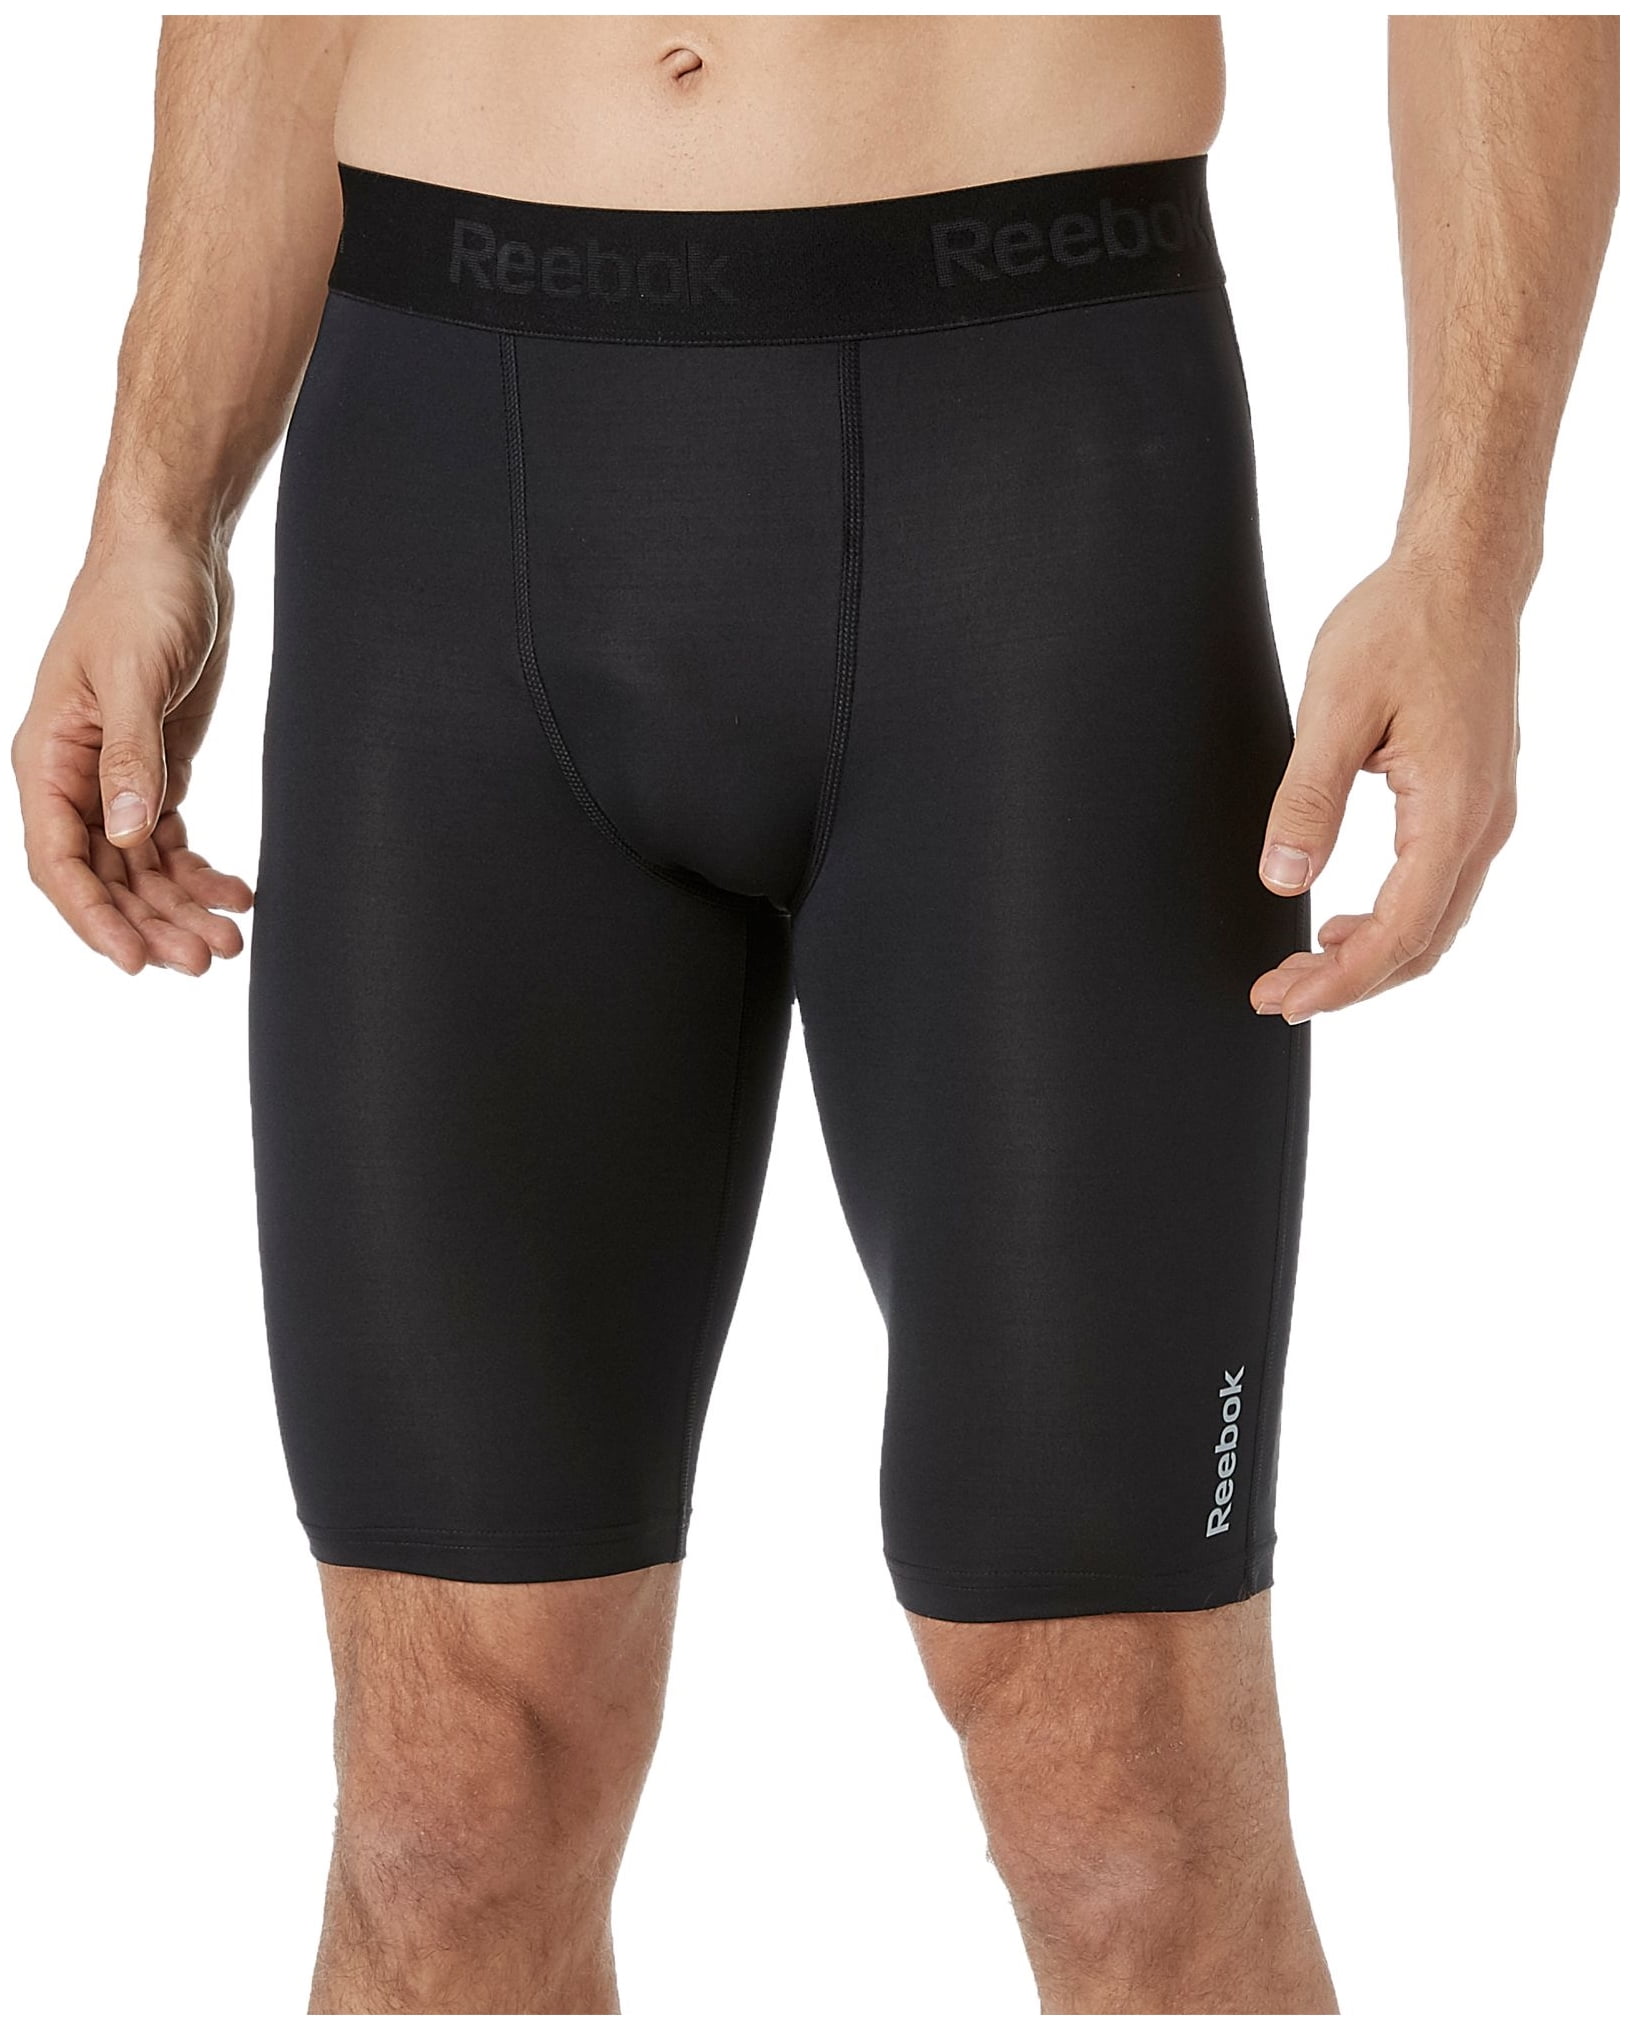 reebok men's compression shorts